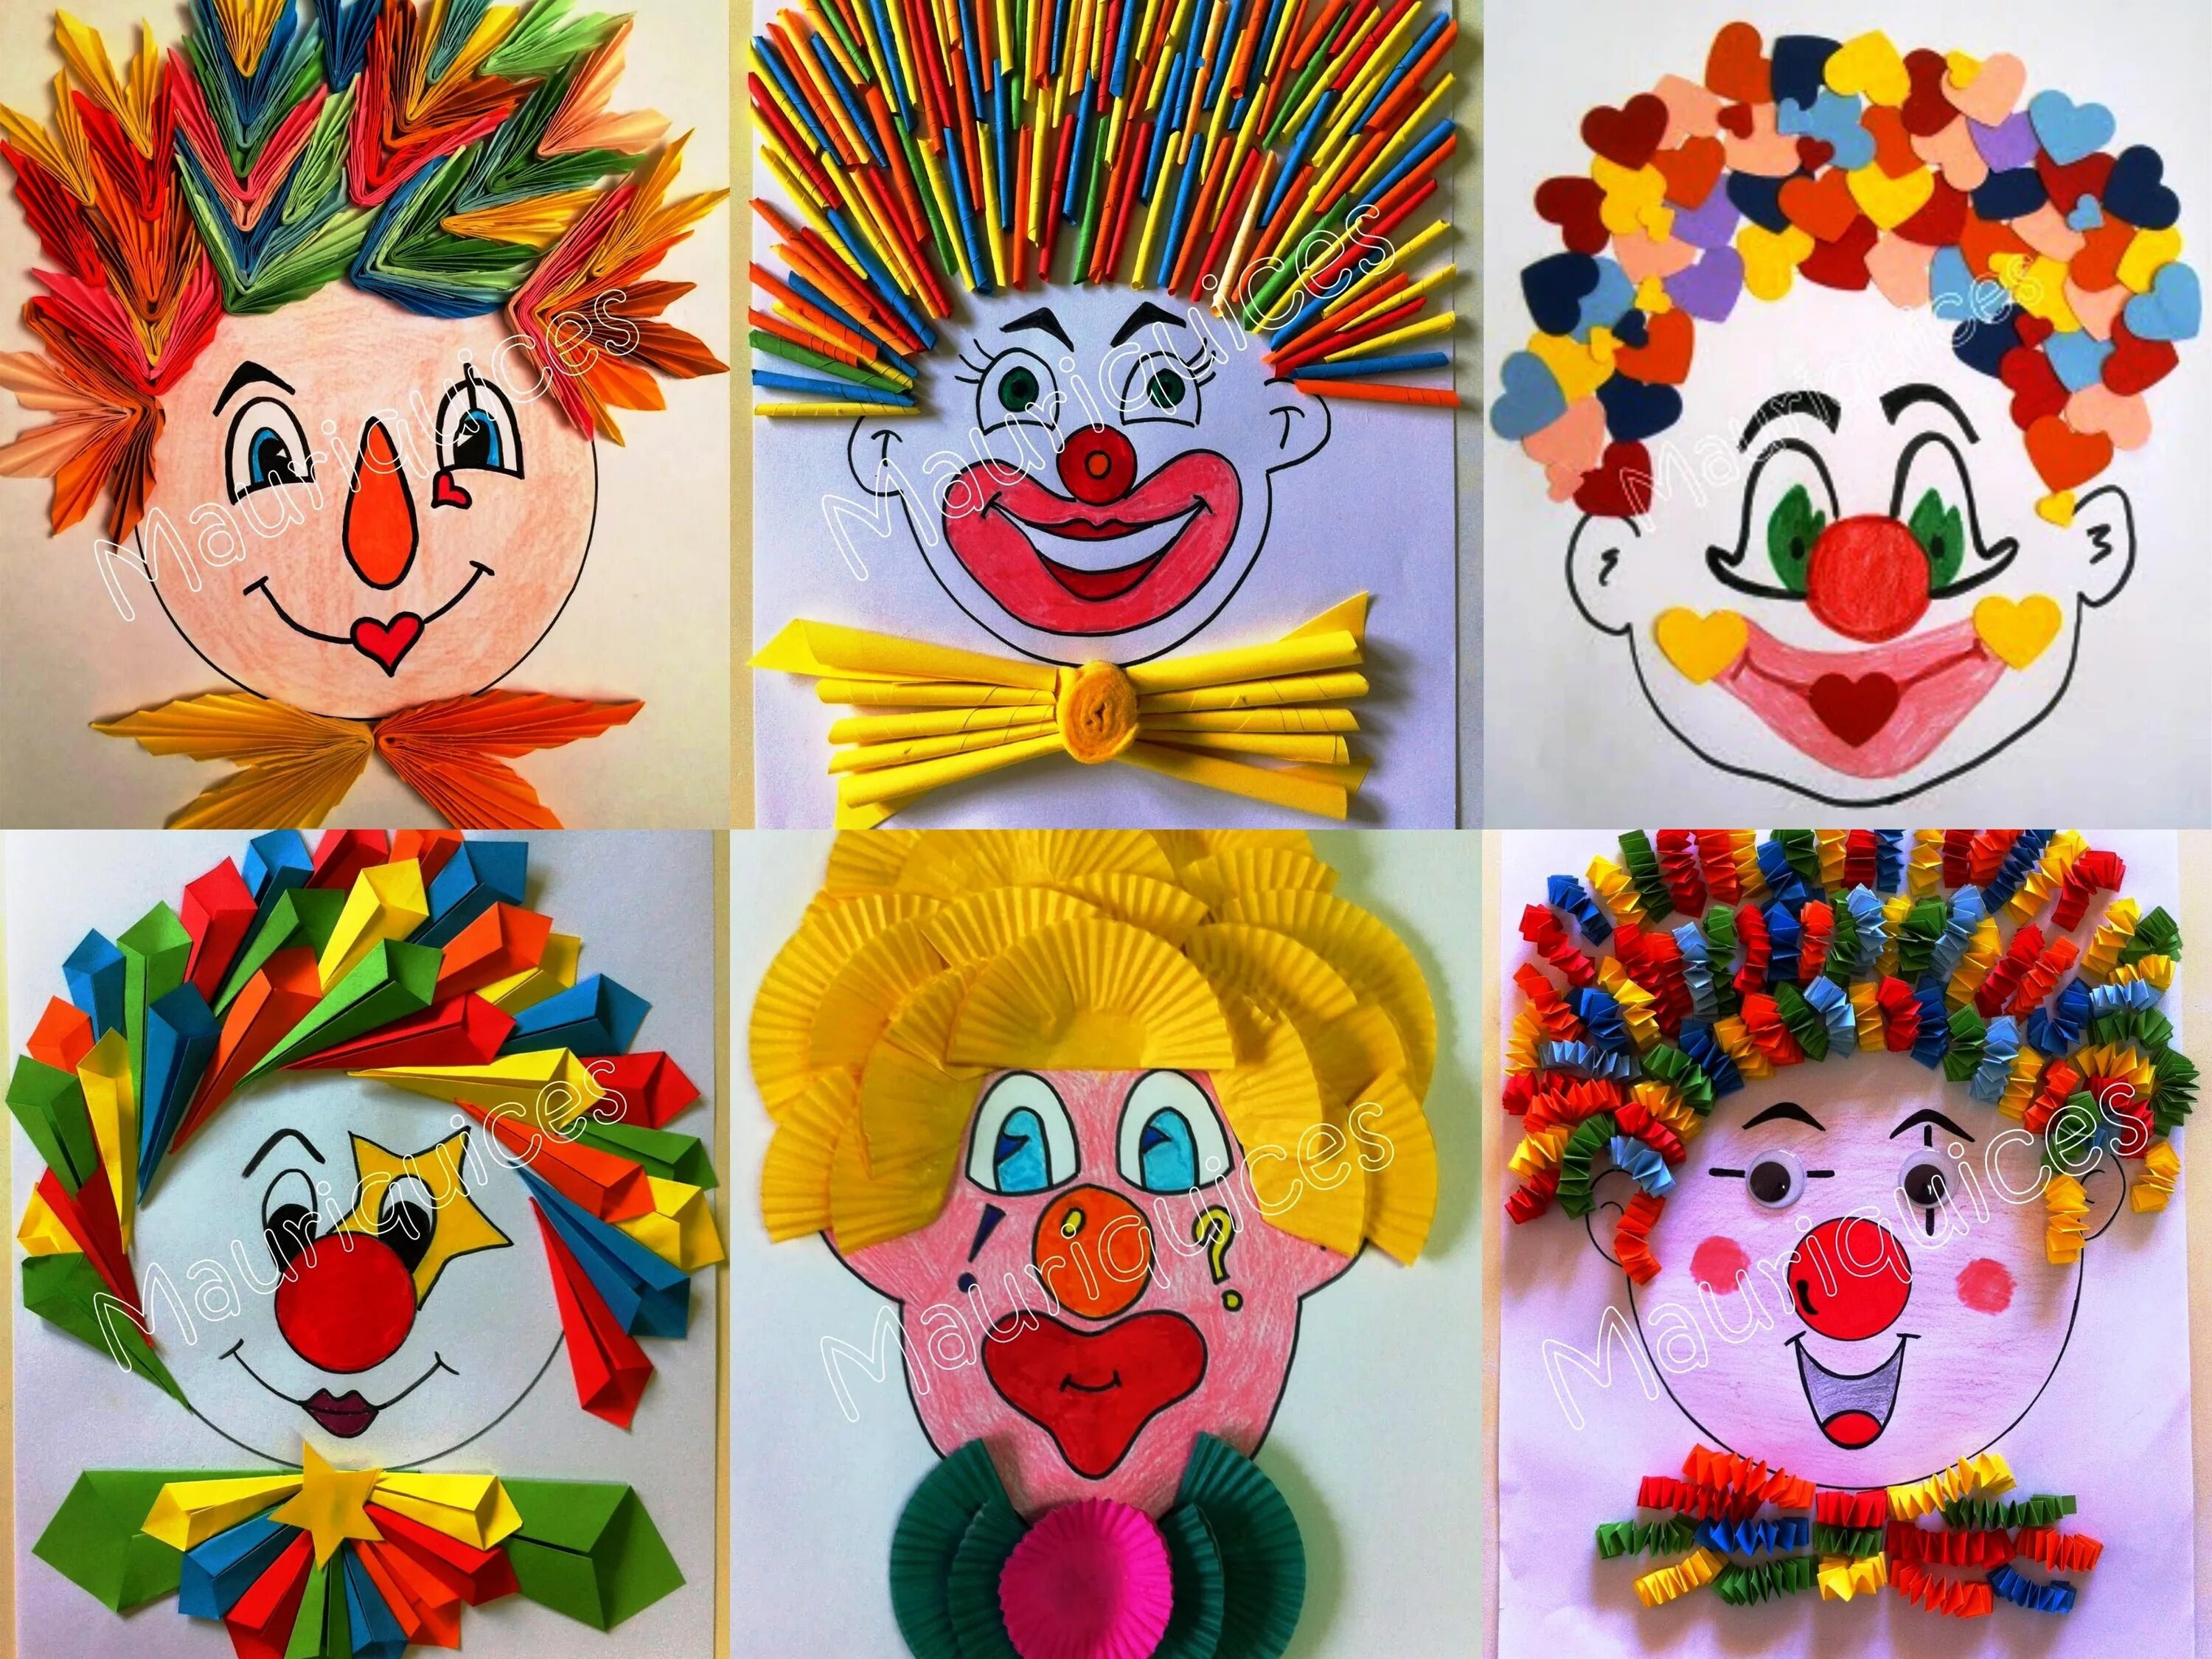 Поделка клоун из цветной бумаги. Аппликация в детском саду. Поддлека клоун. Весёлая аппликация "клоун".